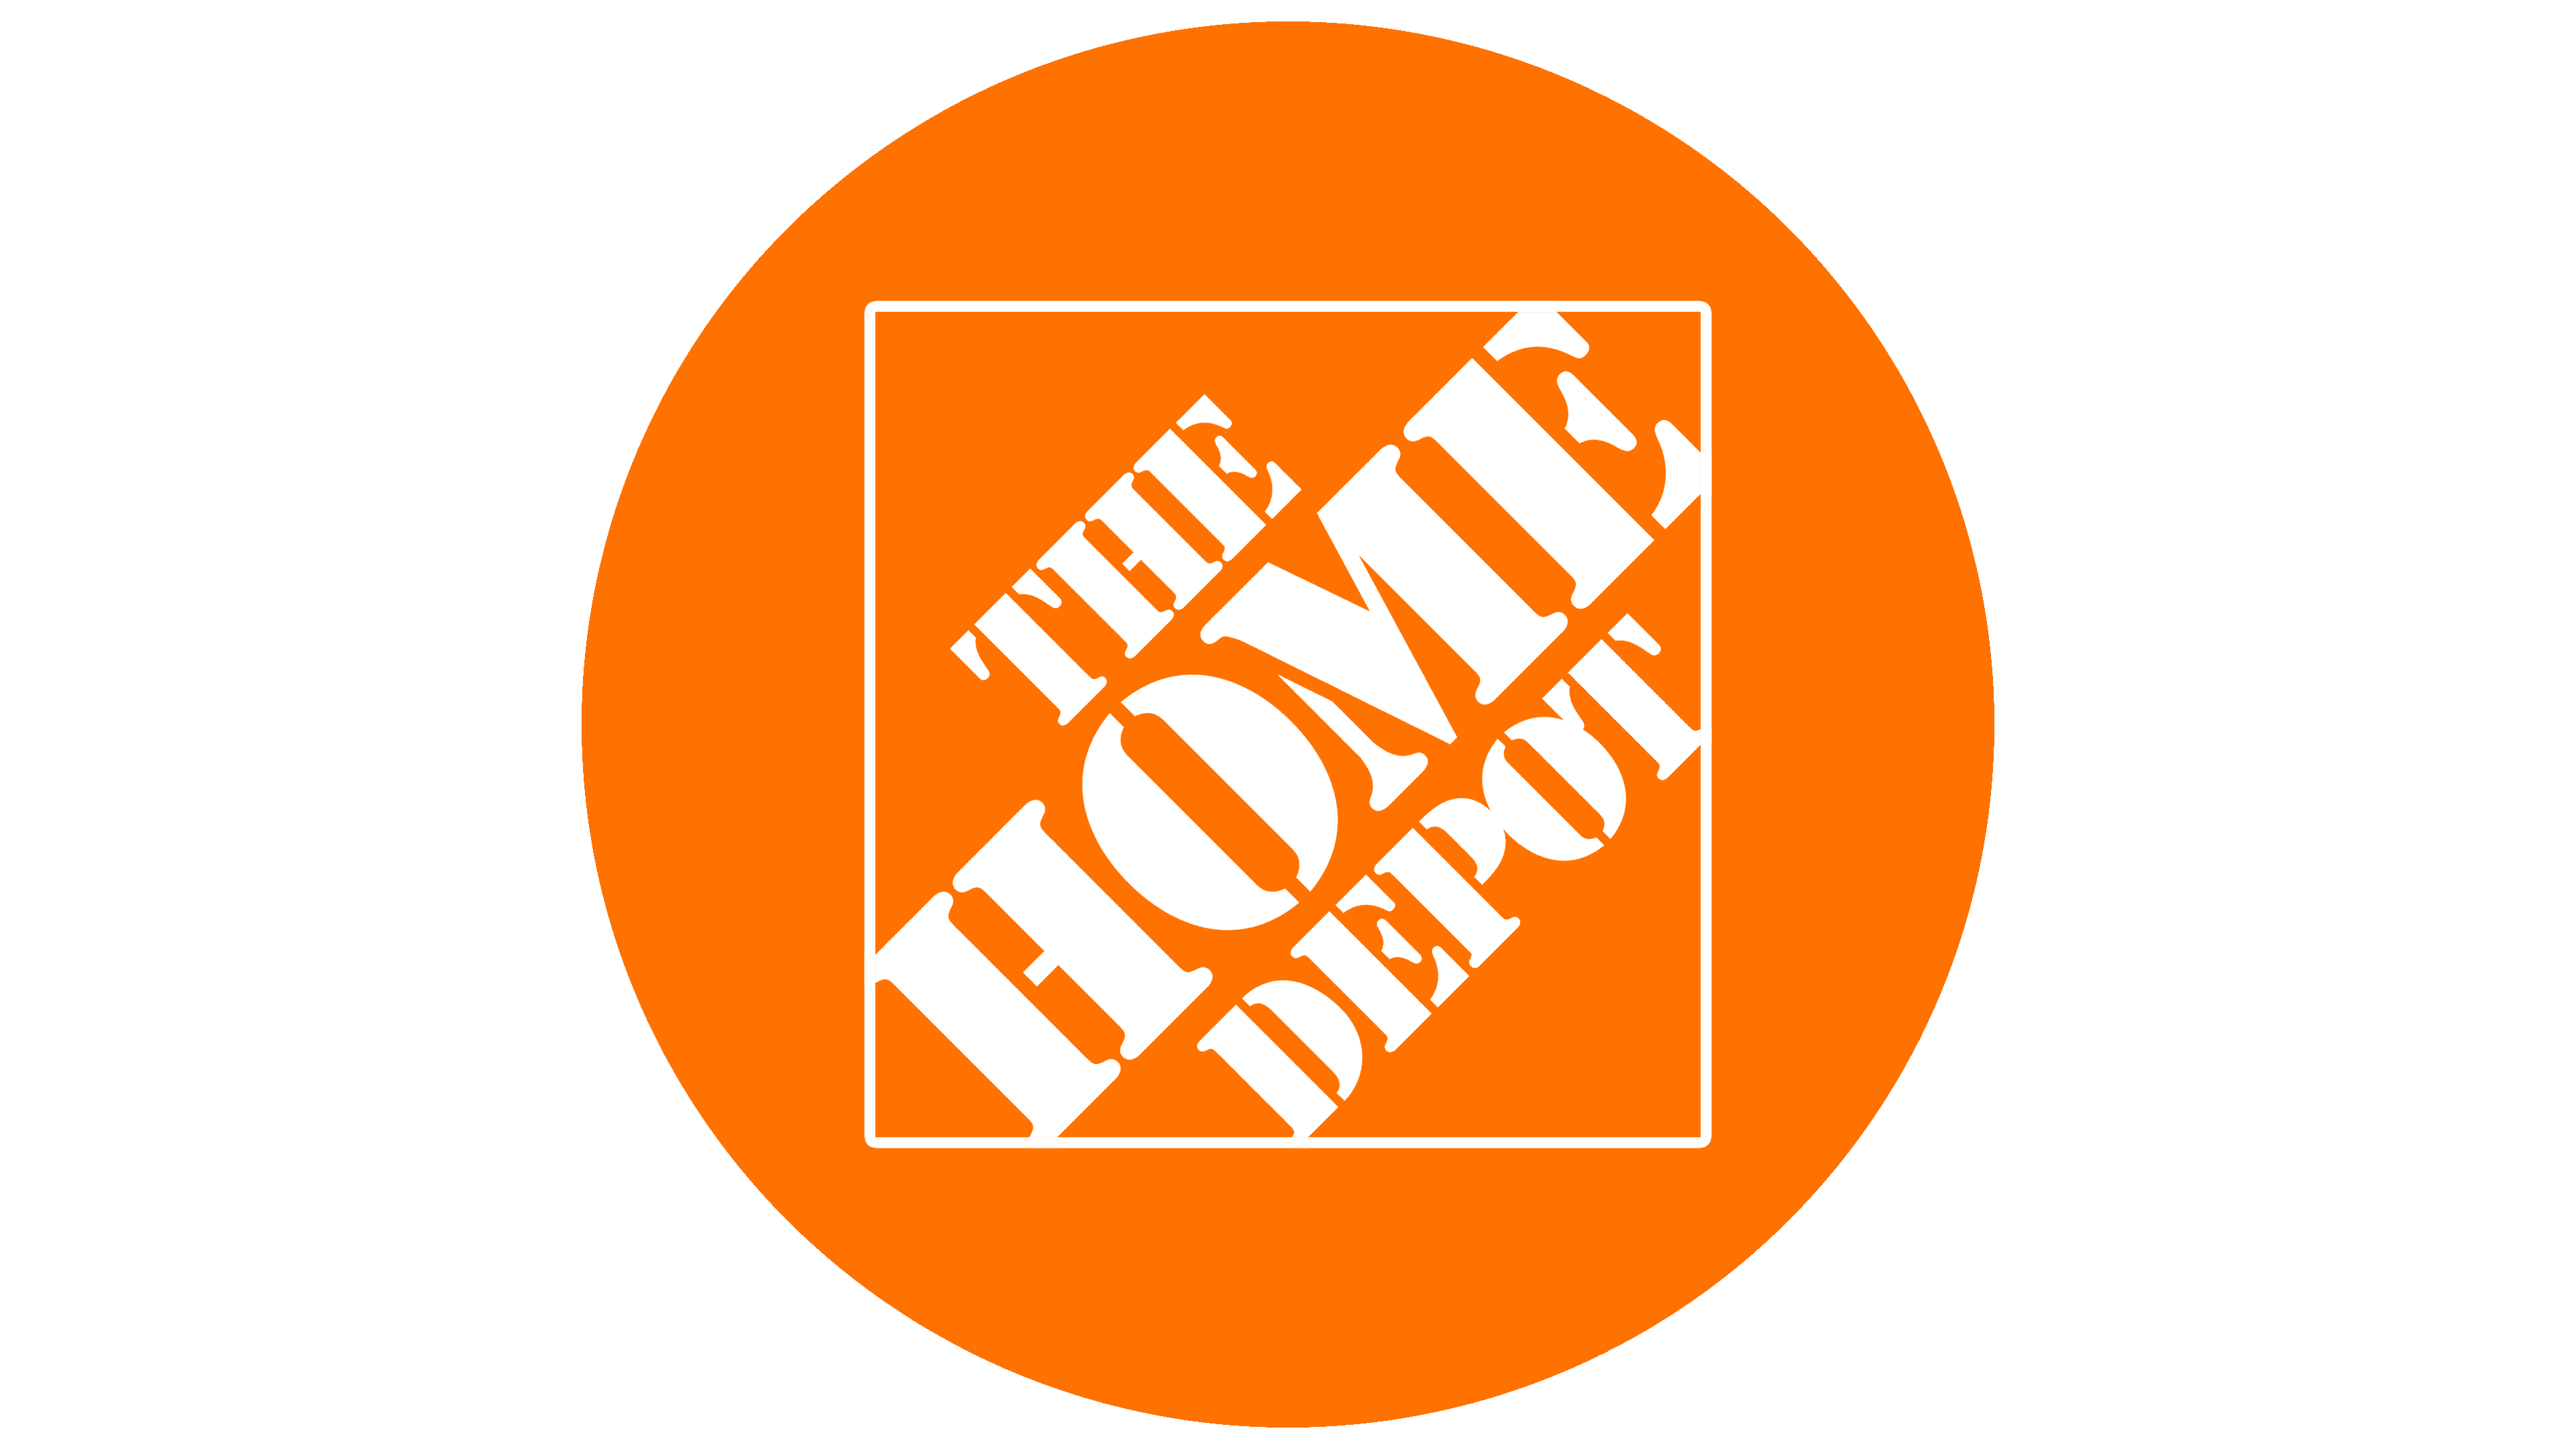 Logotipo de The Home Depot